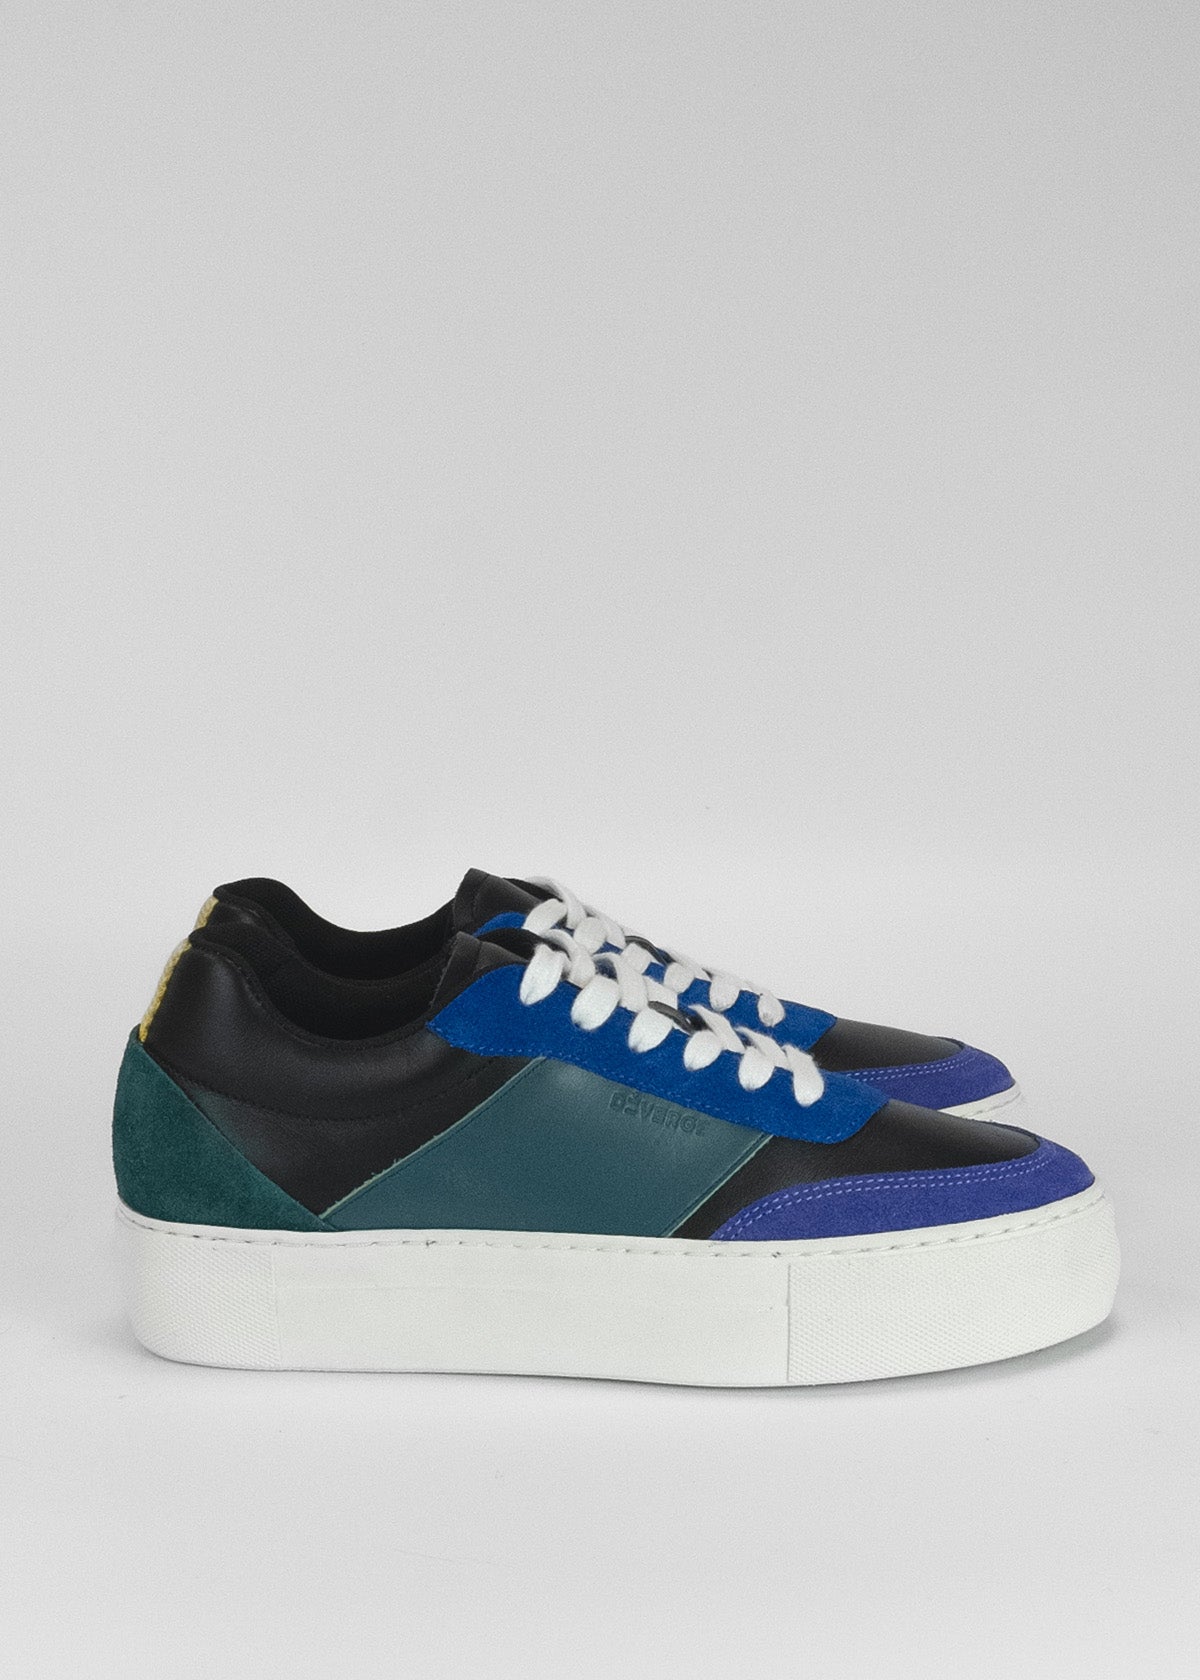 Une paire d'élégantes chaussures en cuir sneakers avec des panneaux bleu électrique, noir et blanc.